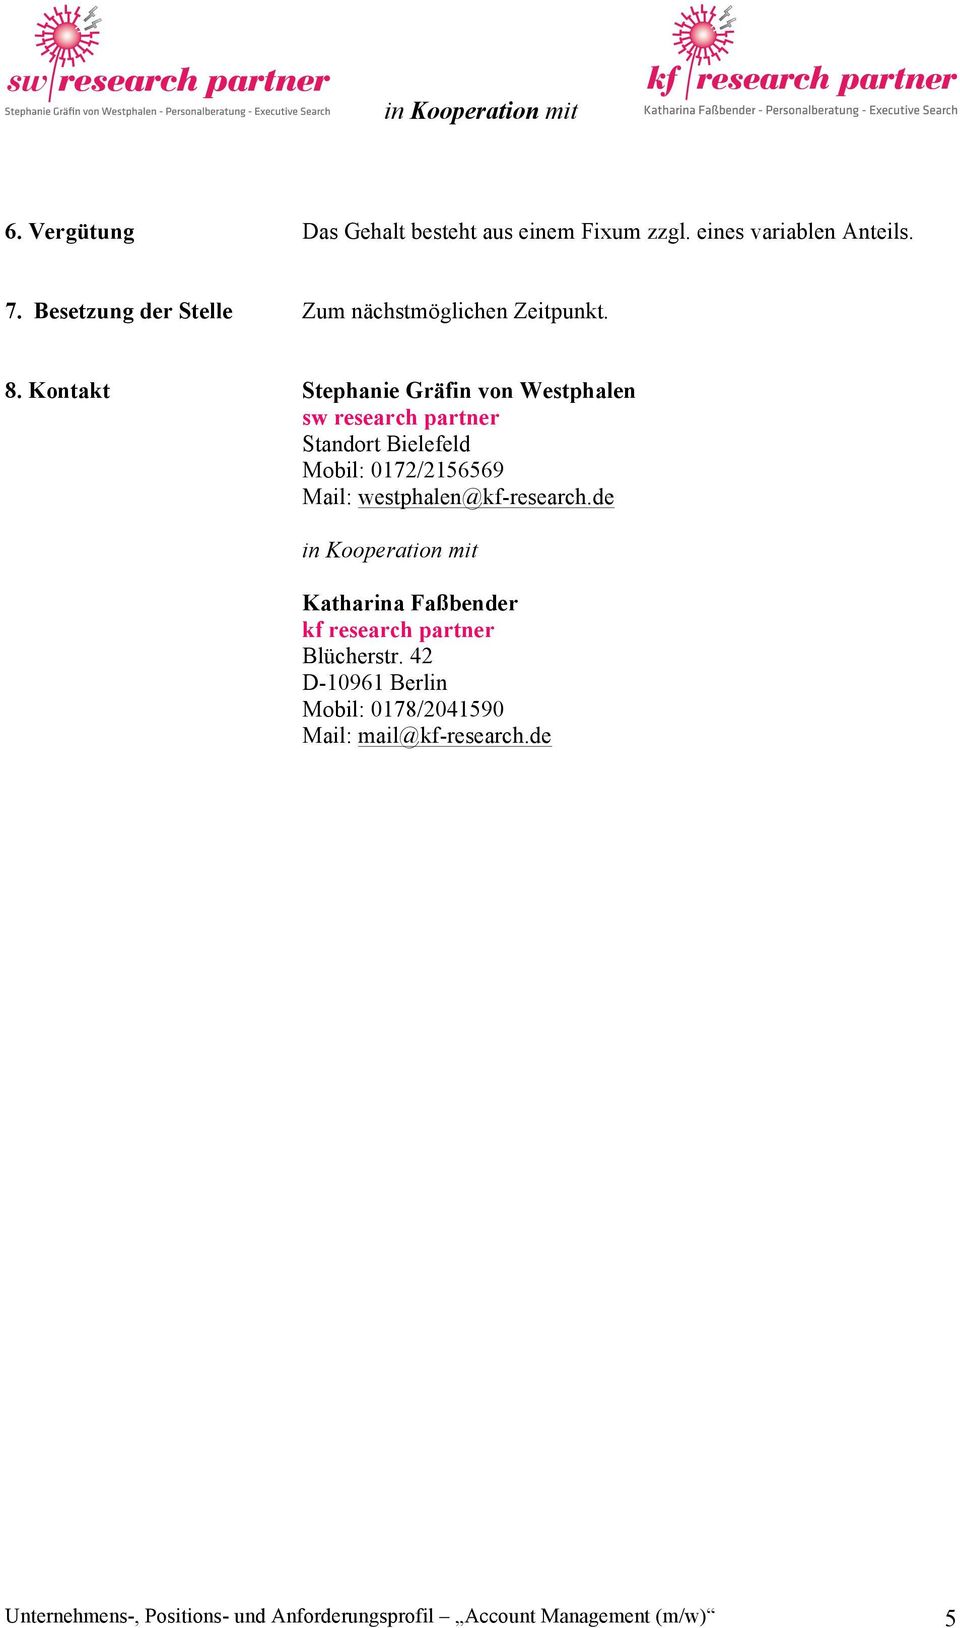 Kontakt Stephanie Gräfin von Westphalen sw research partner Standort Bielefeld Mobil: 0172/2156569 Mail: